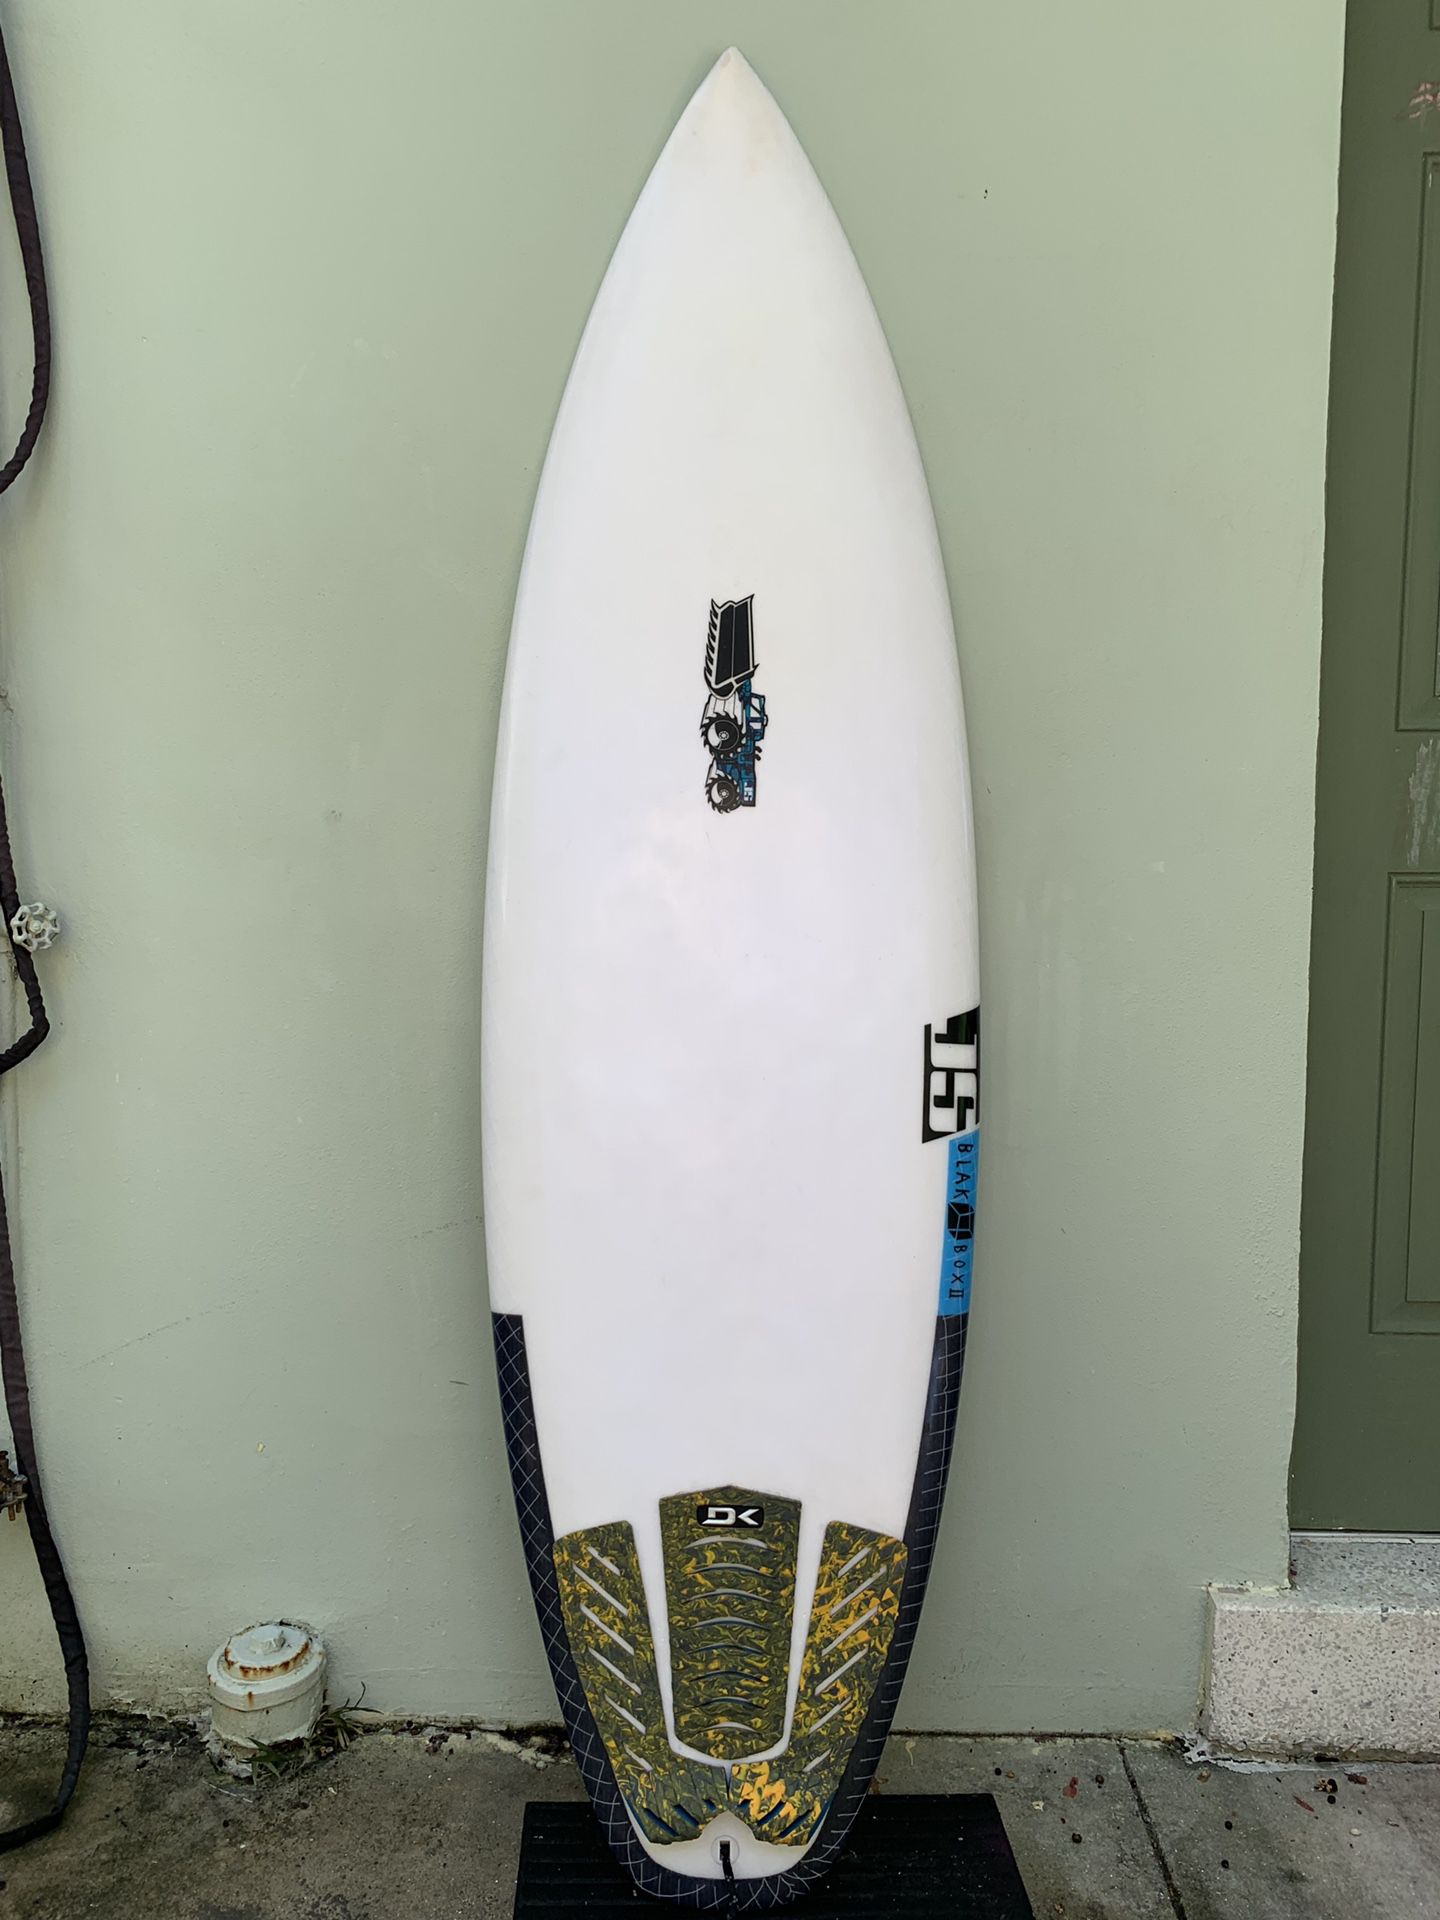 6’1” JS Black Box 2 surfboard